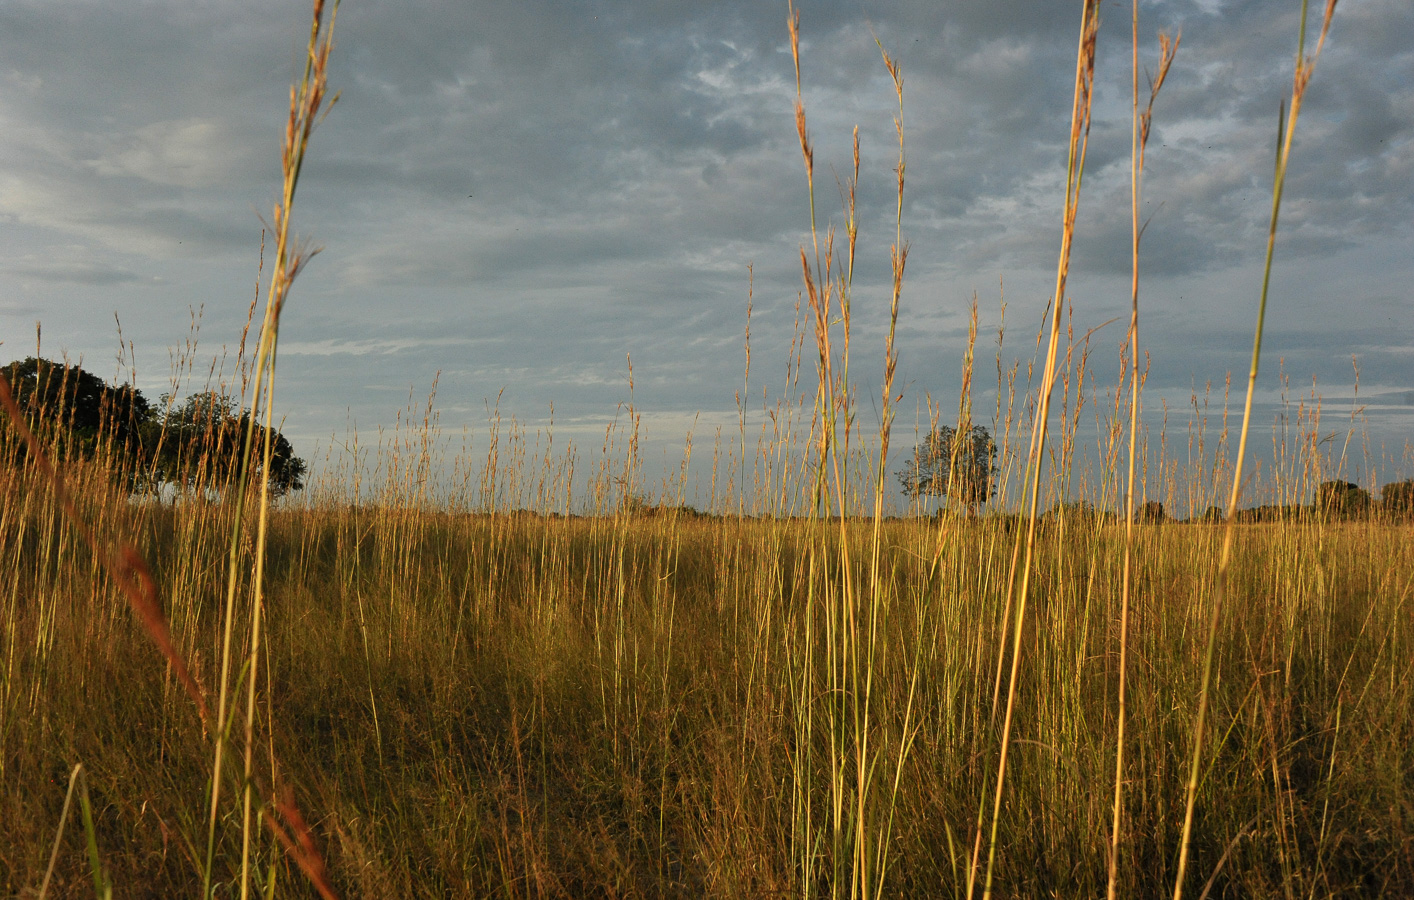 Okavango Delta [28 mm, 1/3200 sec at f / 8.0, ISO 2500]